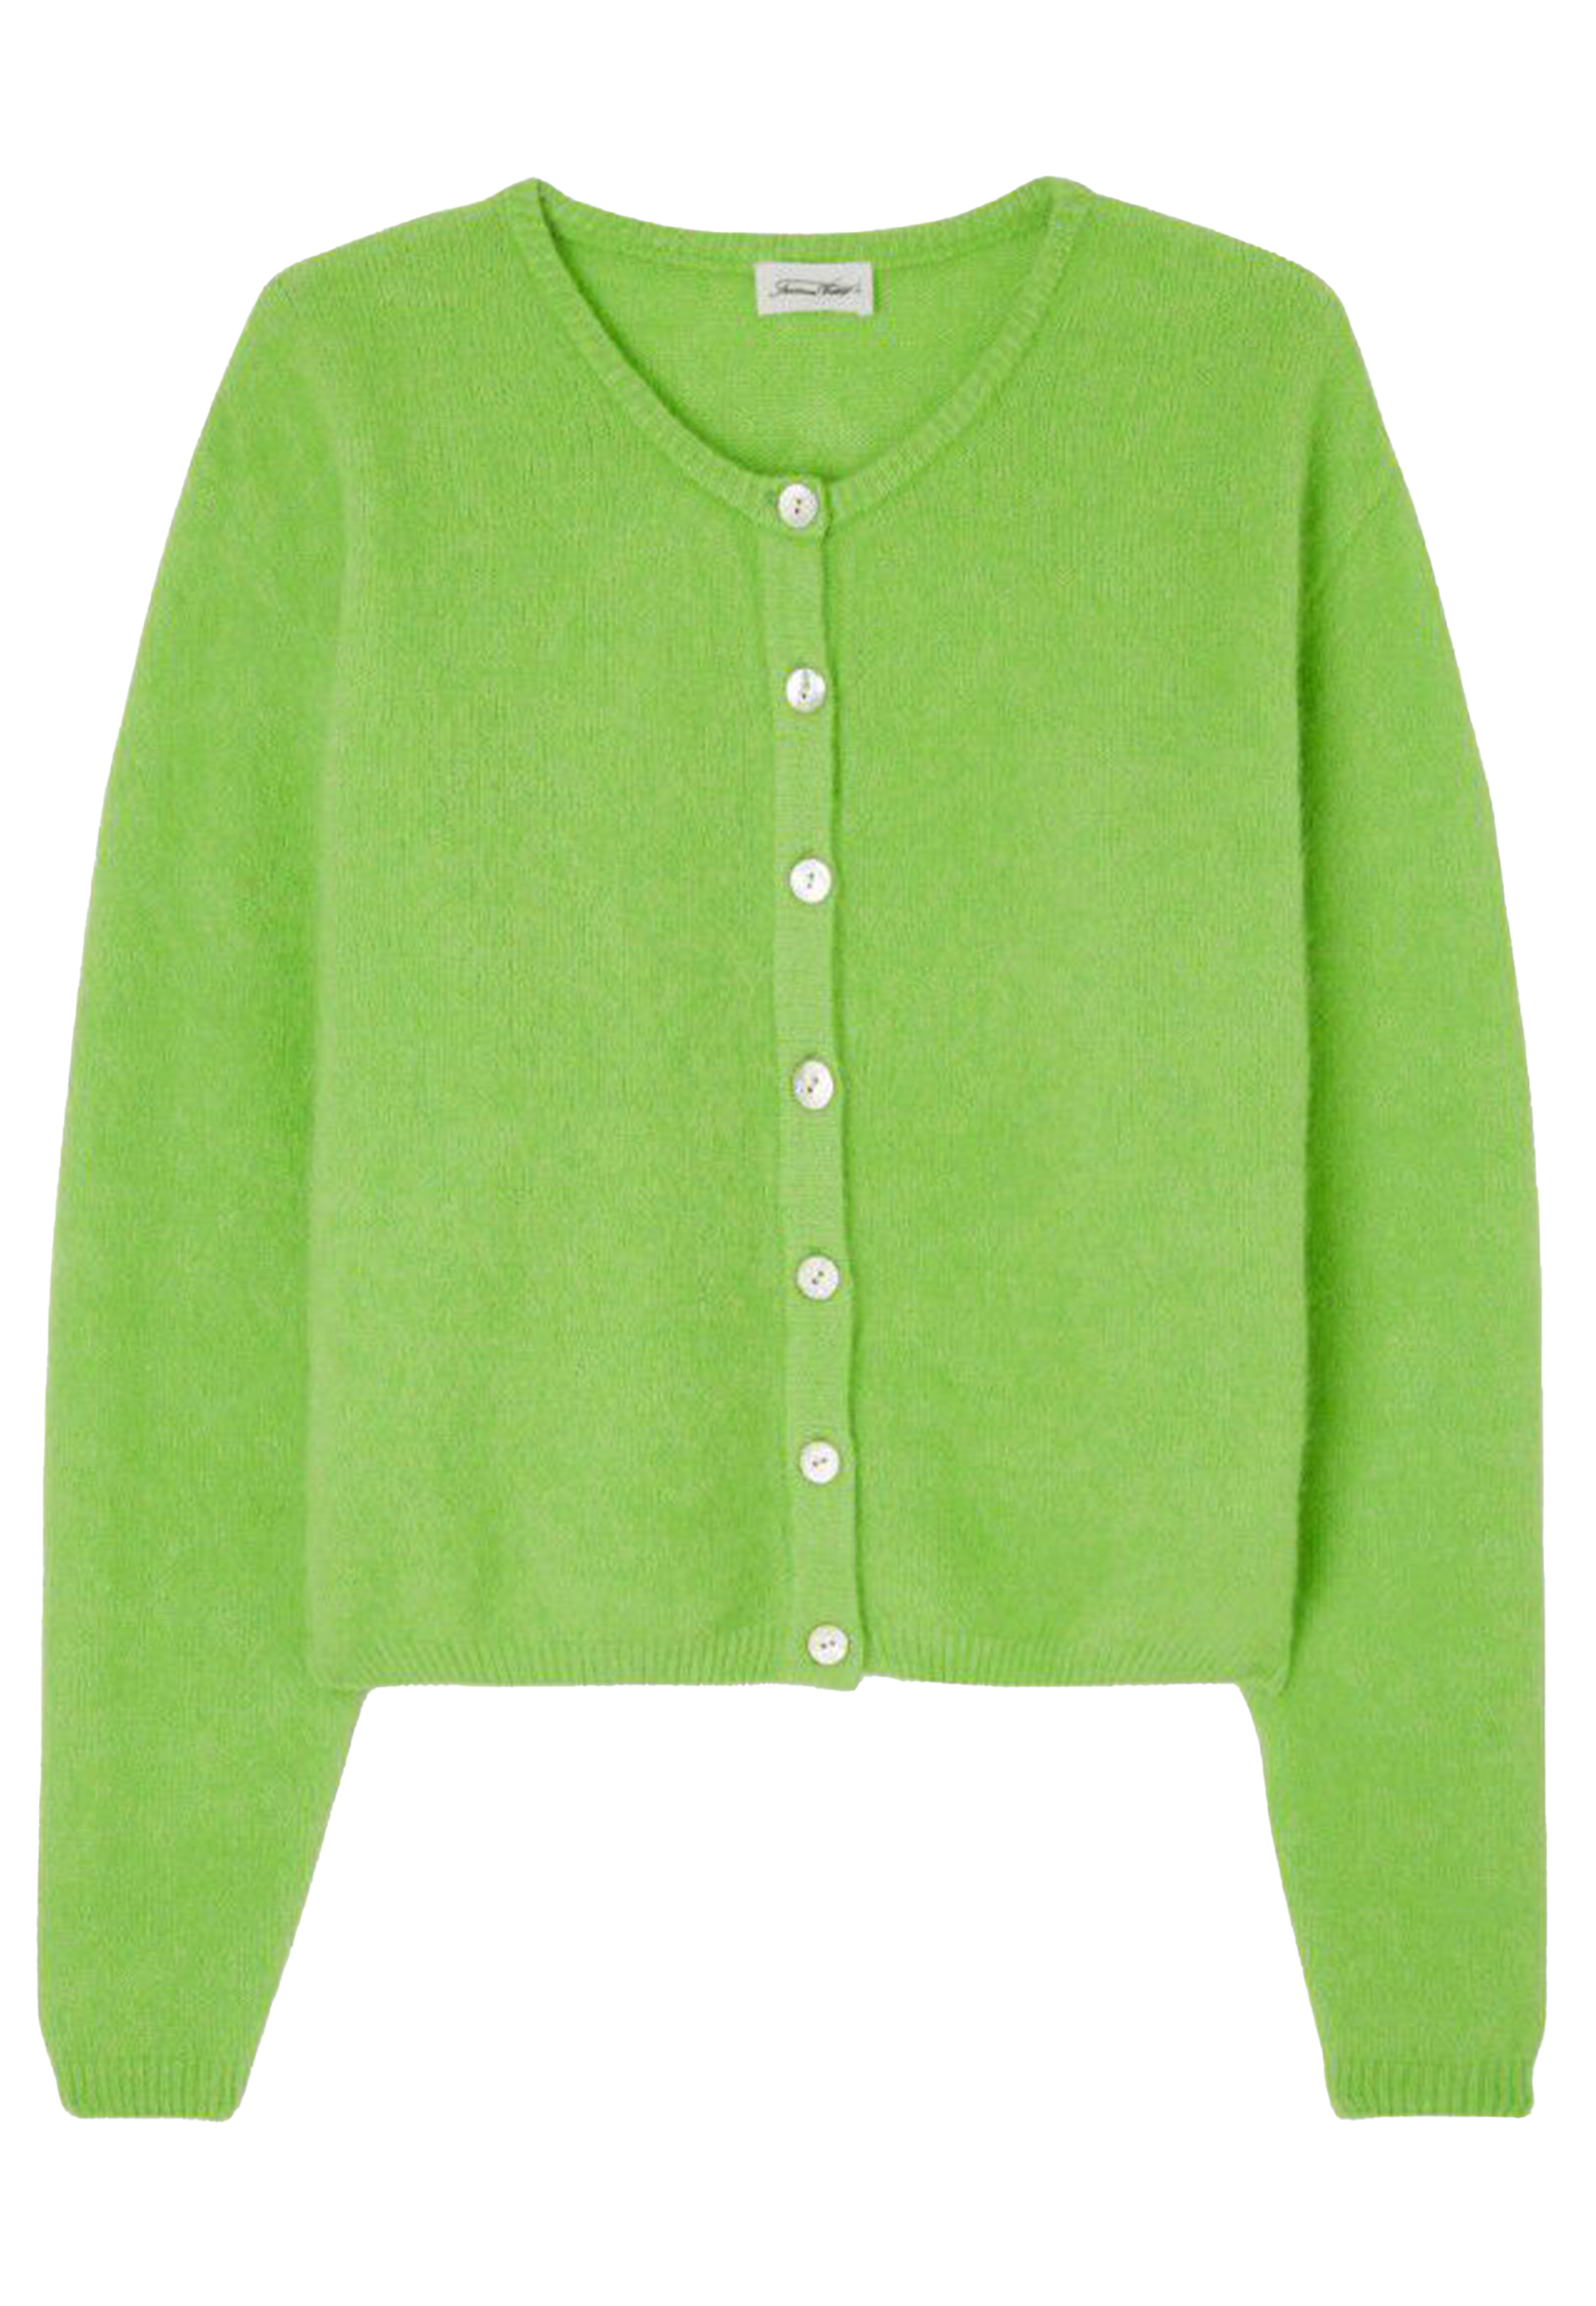 American Vintage vesten groen Dames maat S